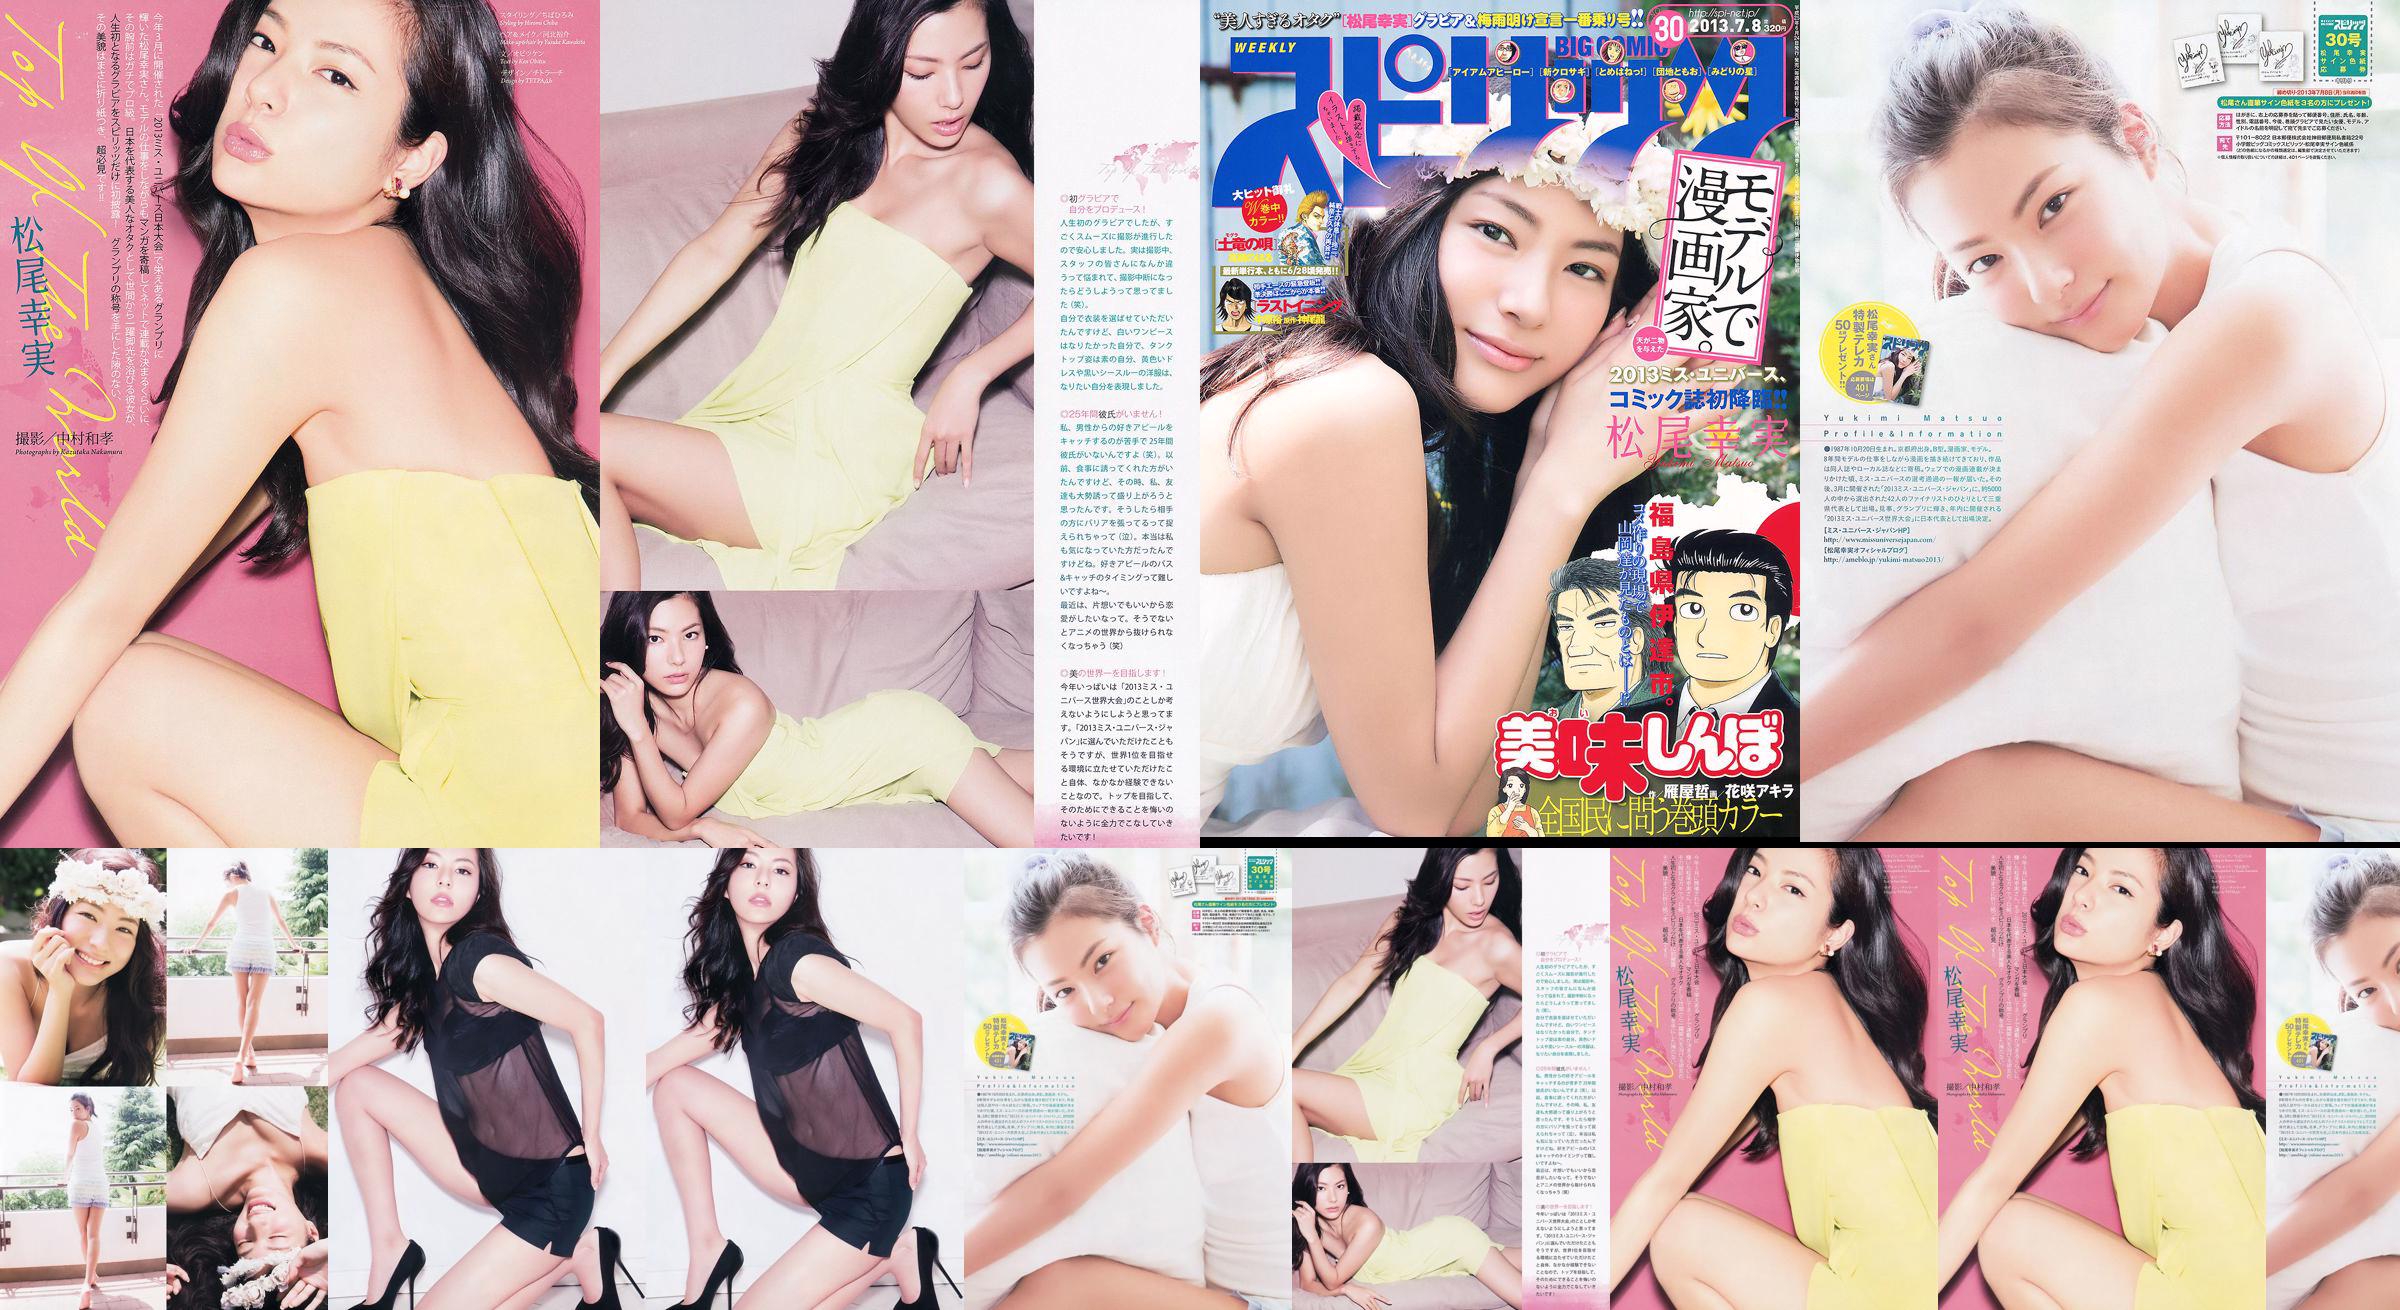 [Grands esprits de la bande dessinée hebdomadaire] Komi Matsuo 2013 No.30 Photo Magazine No.026a43 Page 1